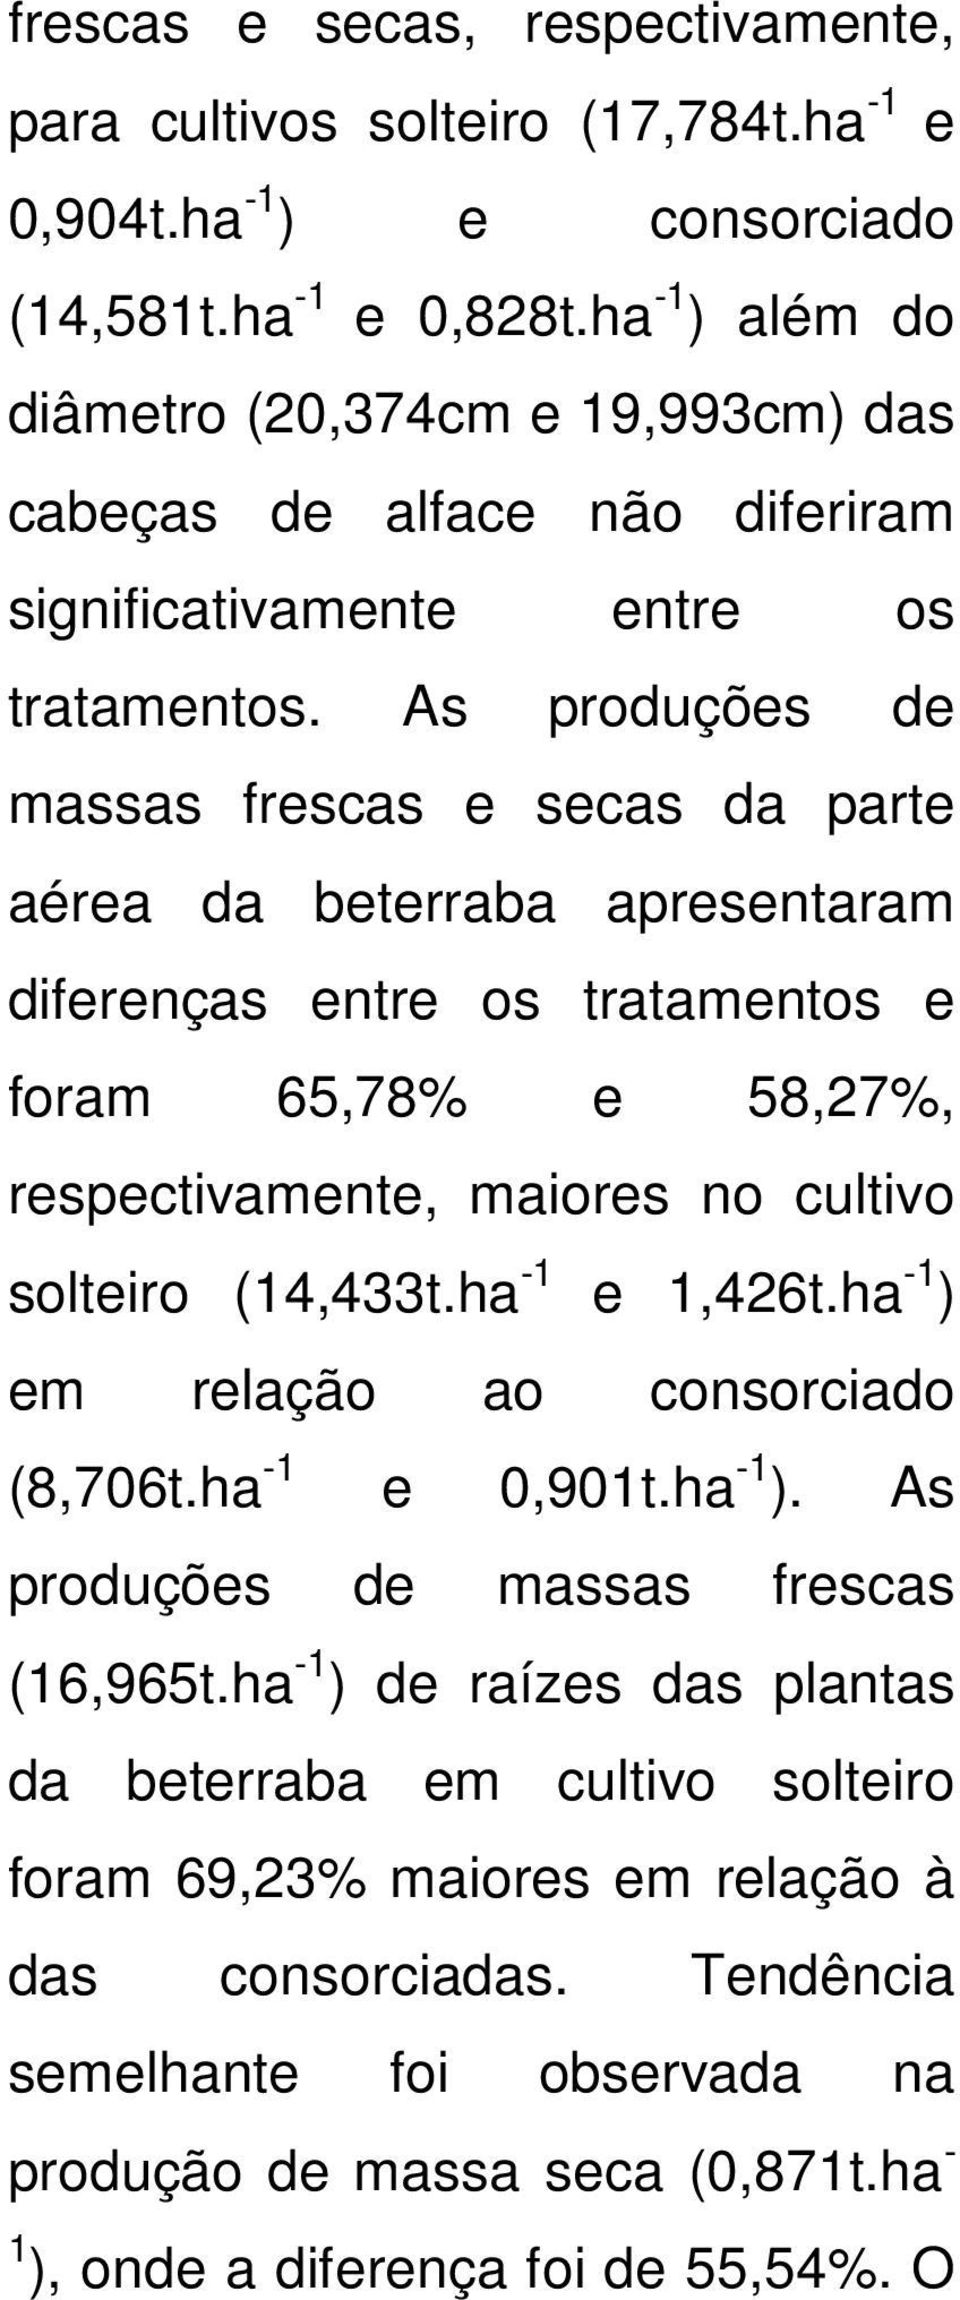 As produções de massas frescas e secas da parte aérea da beterraba apresentaram diferenças entre os tratamentos e foram 65,78% e 58,27%, respectivamente, maiores no cultivo solteiro (14,433t.